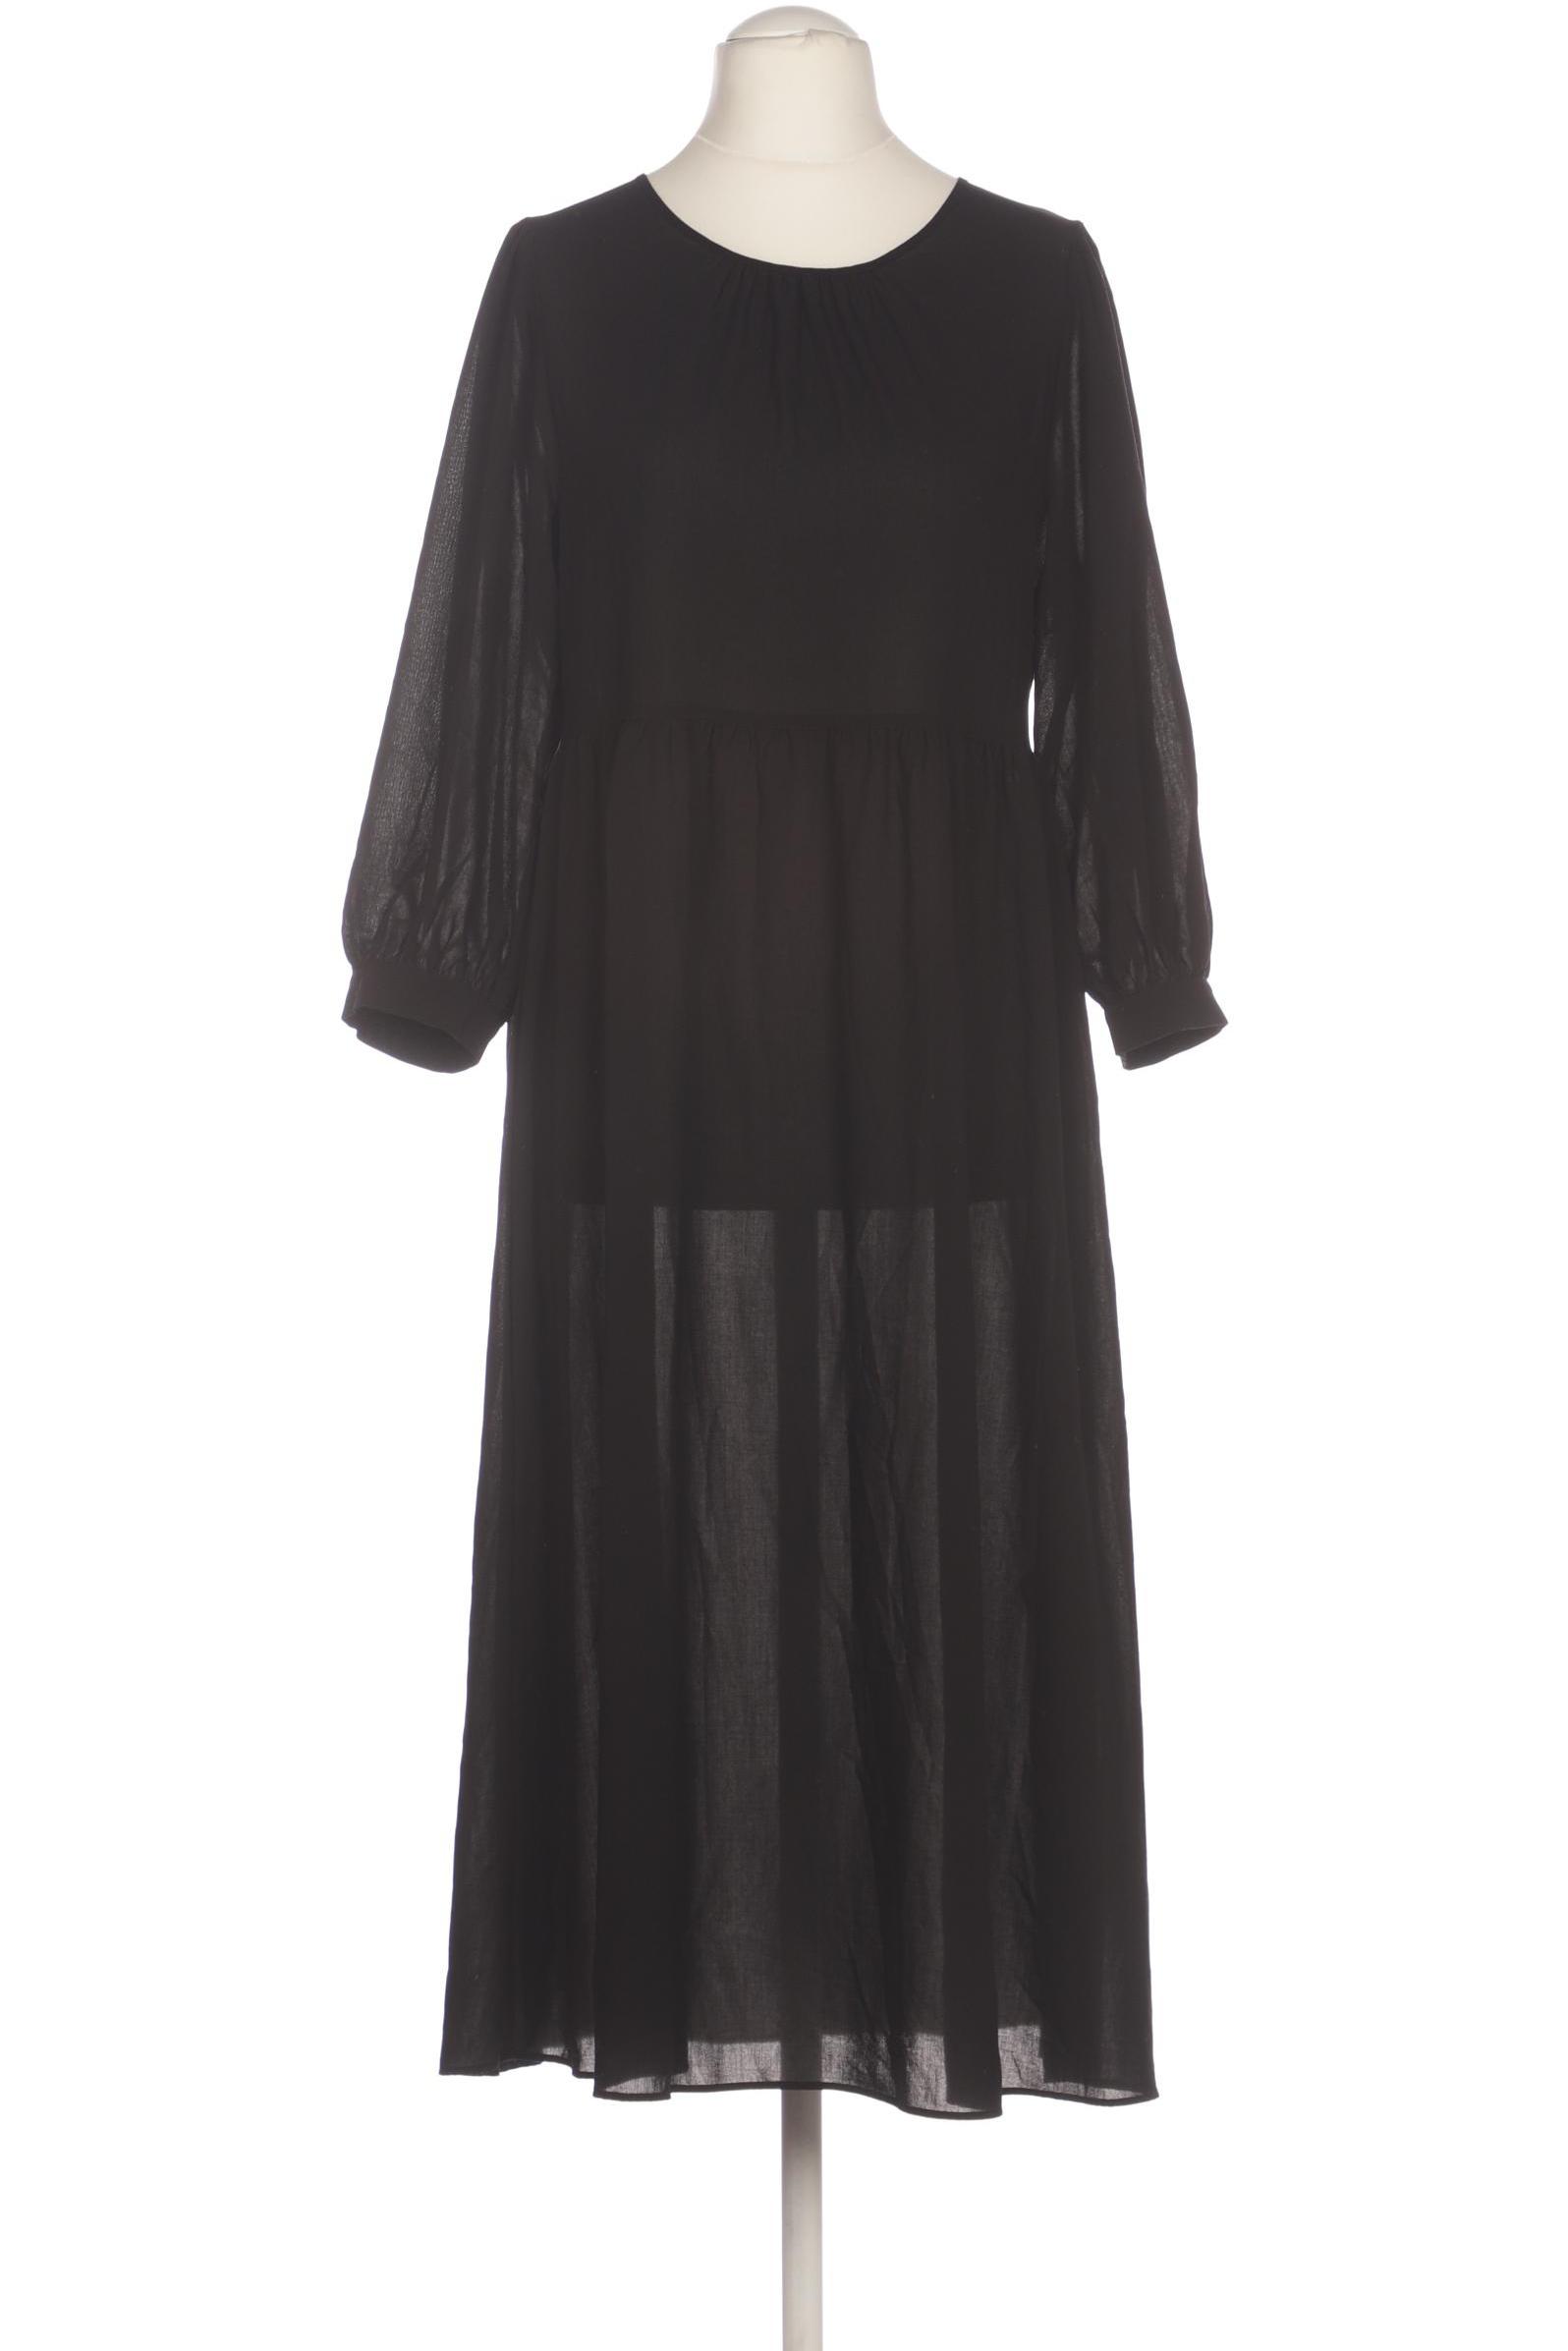 uniqlo Damen Kleid, schwarz von uniqlo